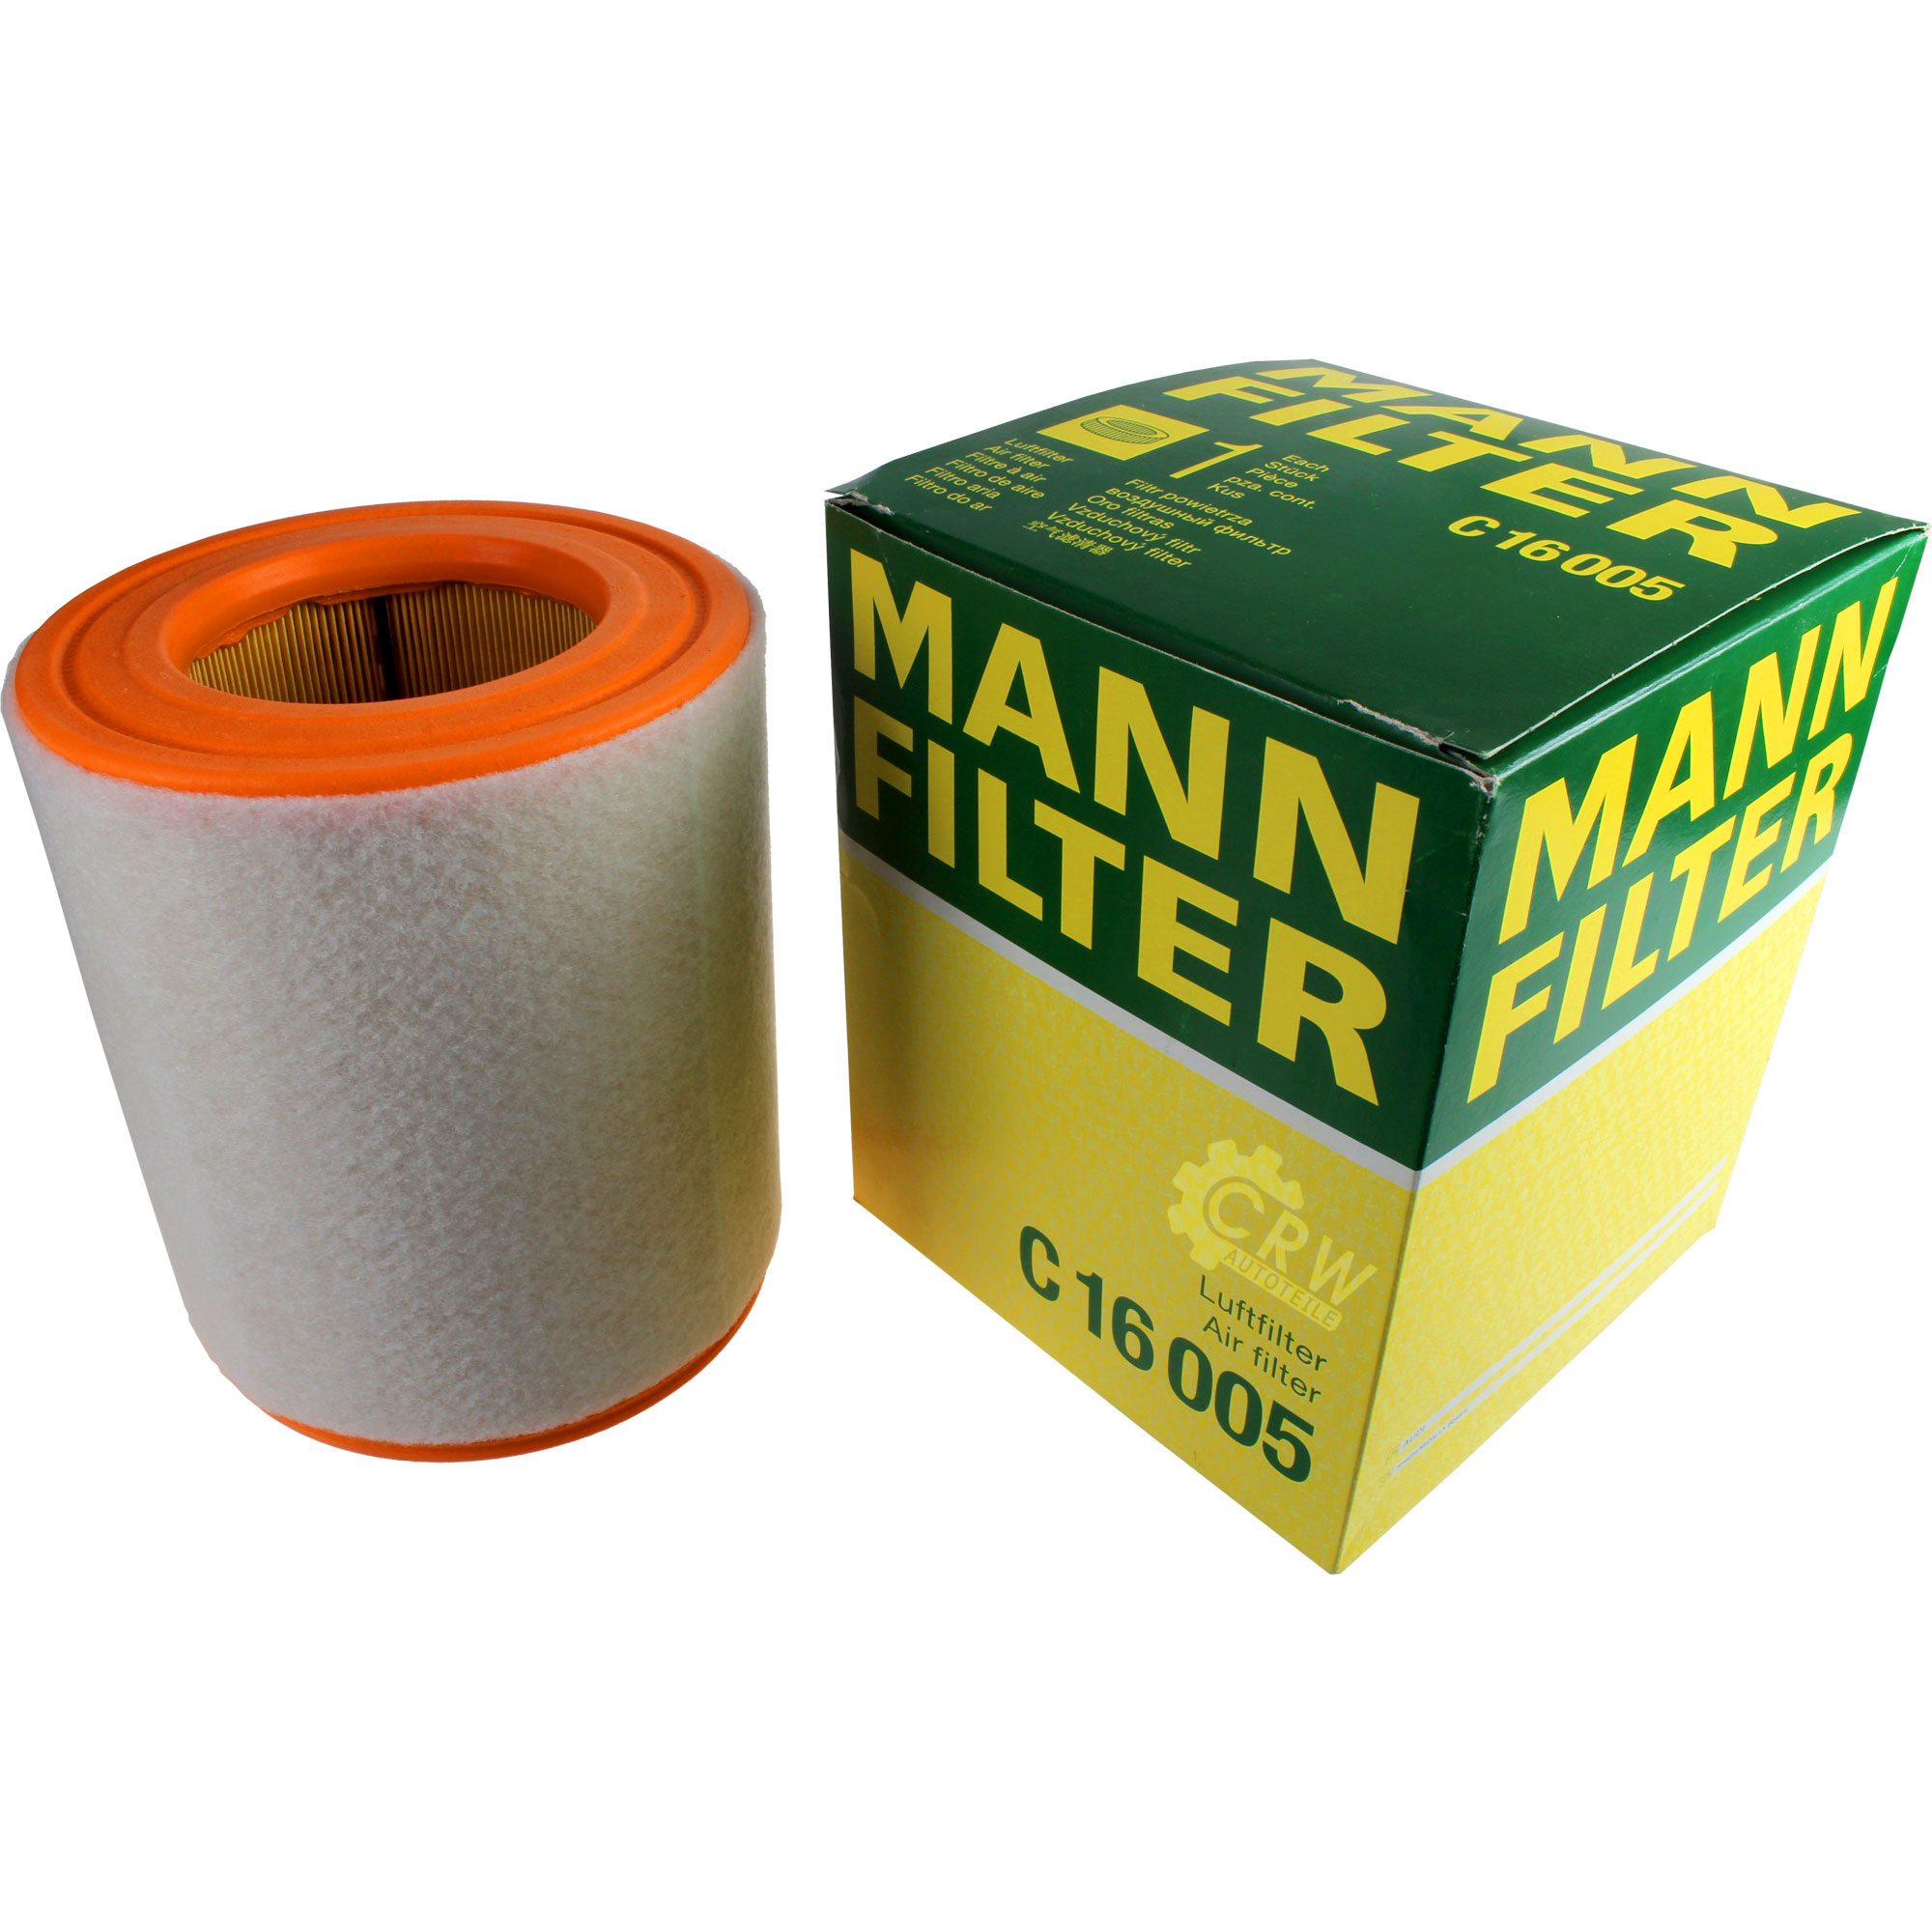 Mann filter воздушный фильтр. Mann Filter c 16 005. Mann c2564 воздушный фильтр. Mann c2074 воздушный фильтр. Фильтр воздушный Mann c24026.